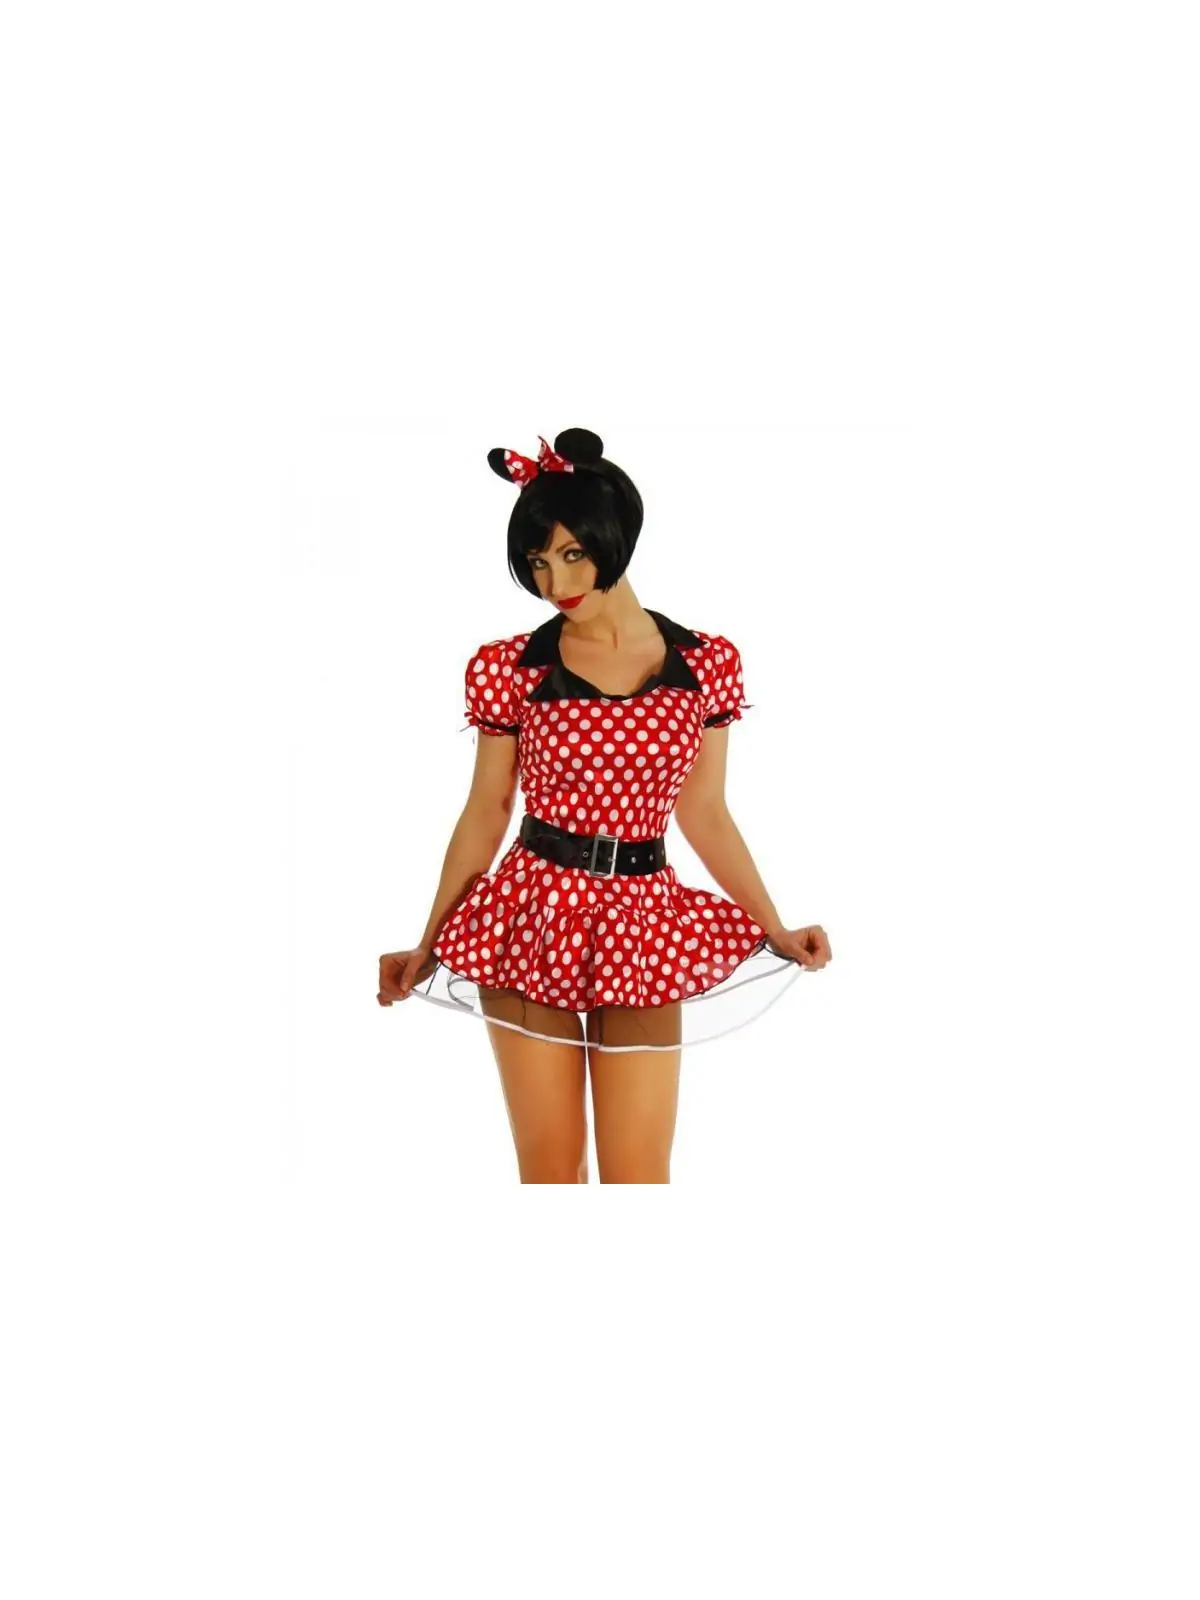 Minnie Mouse-Kostüm rot/weiß kaufen - Fesselliebe